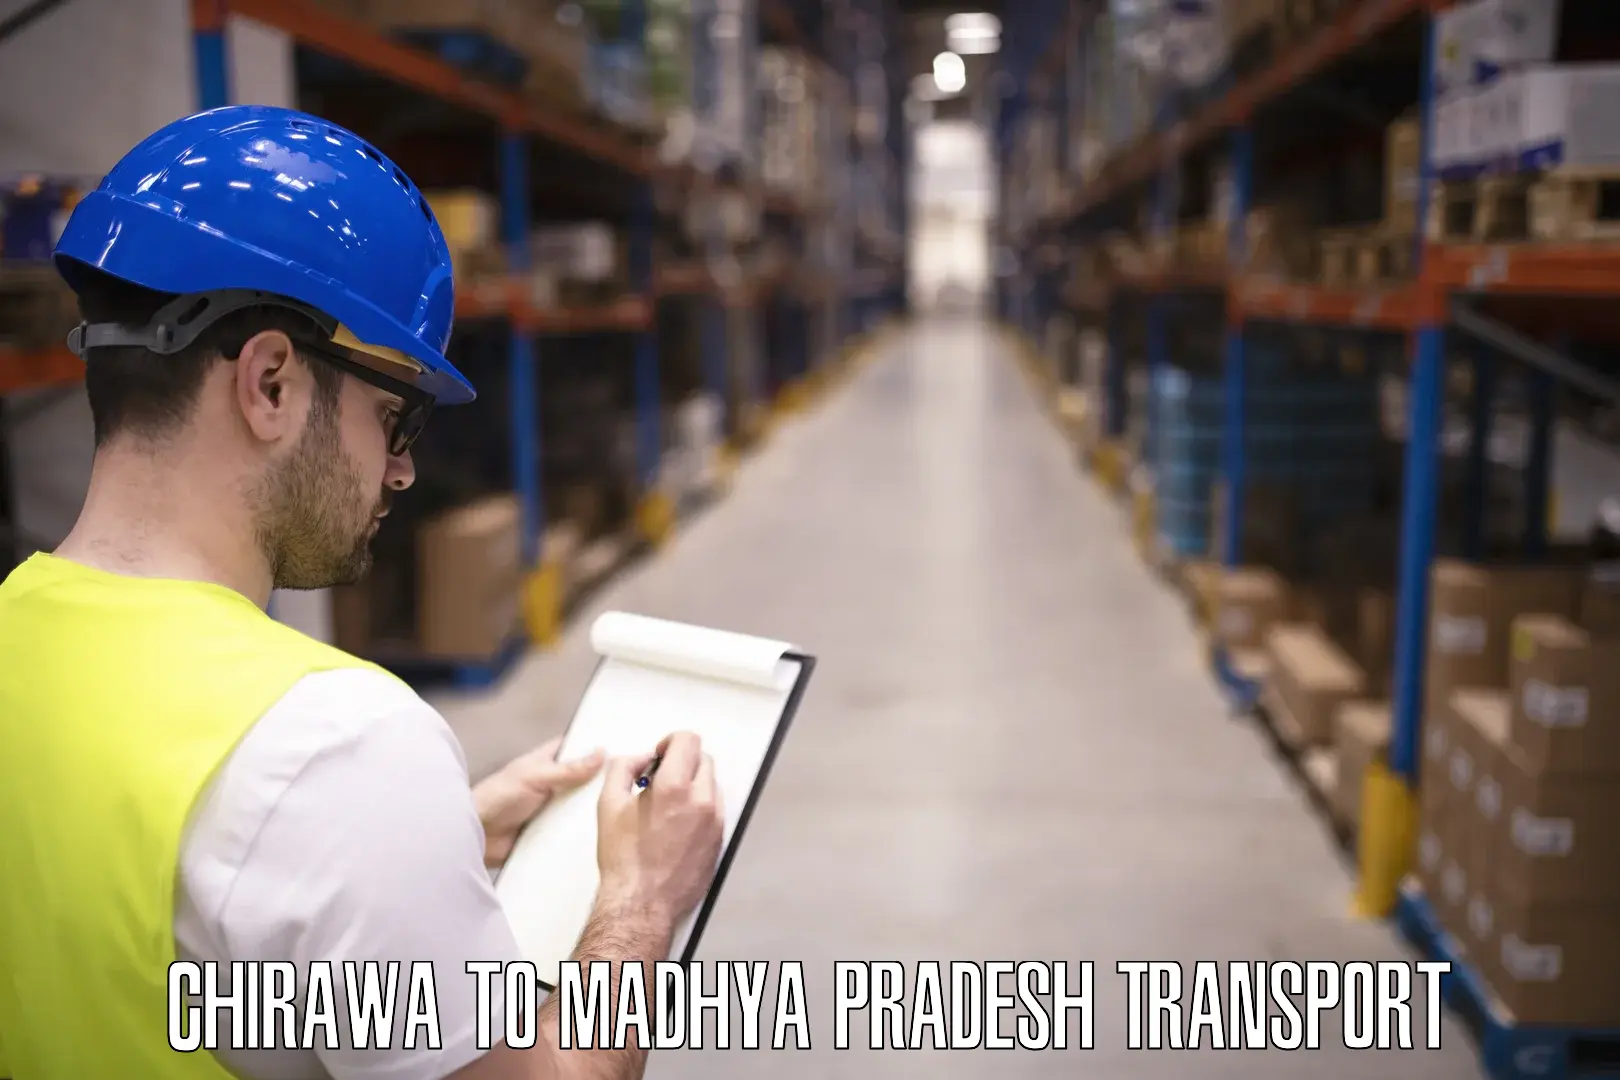 Shipping partner Chirawa to Madhya Pradesh